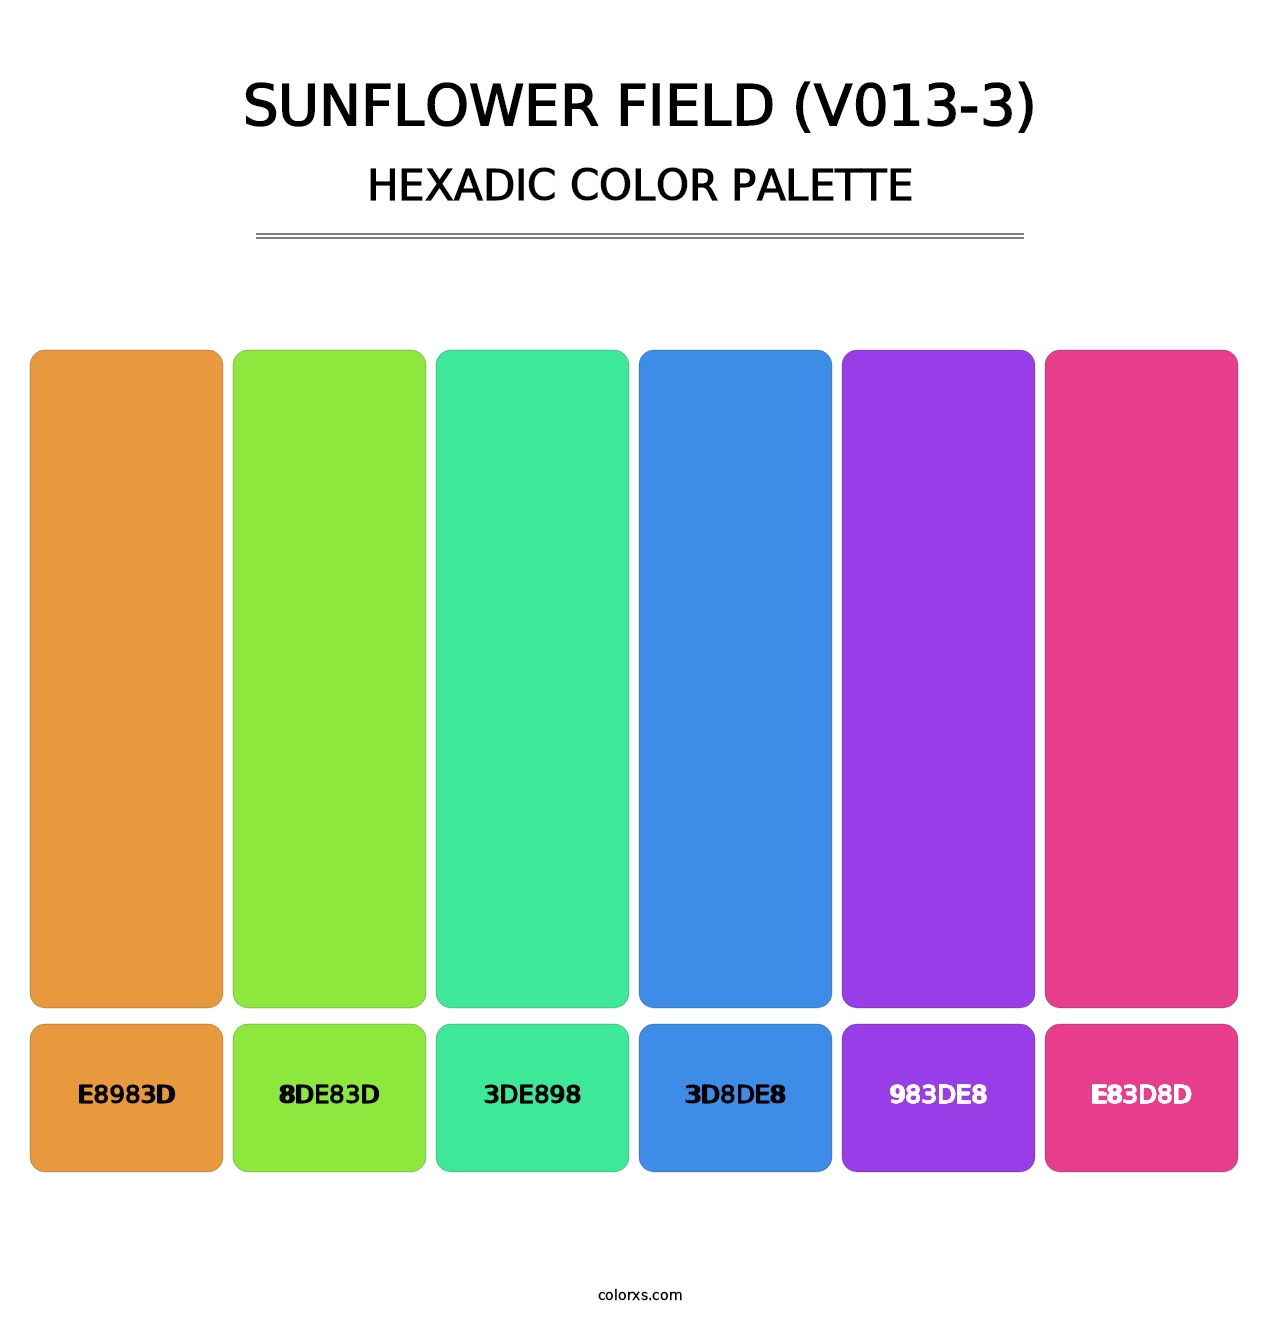 Sunflower Field (V013-3) - Hexadic Color Palette